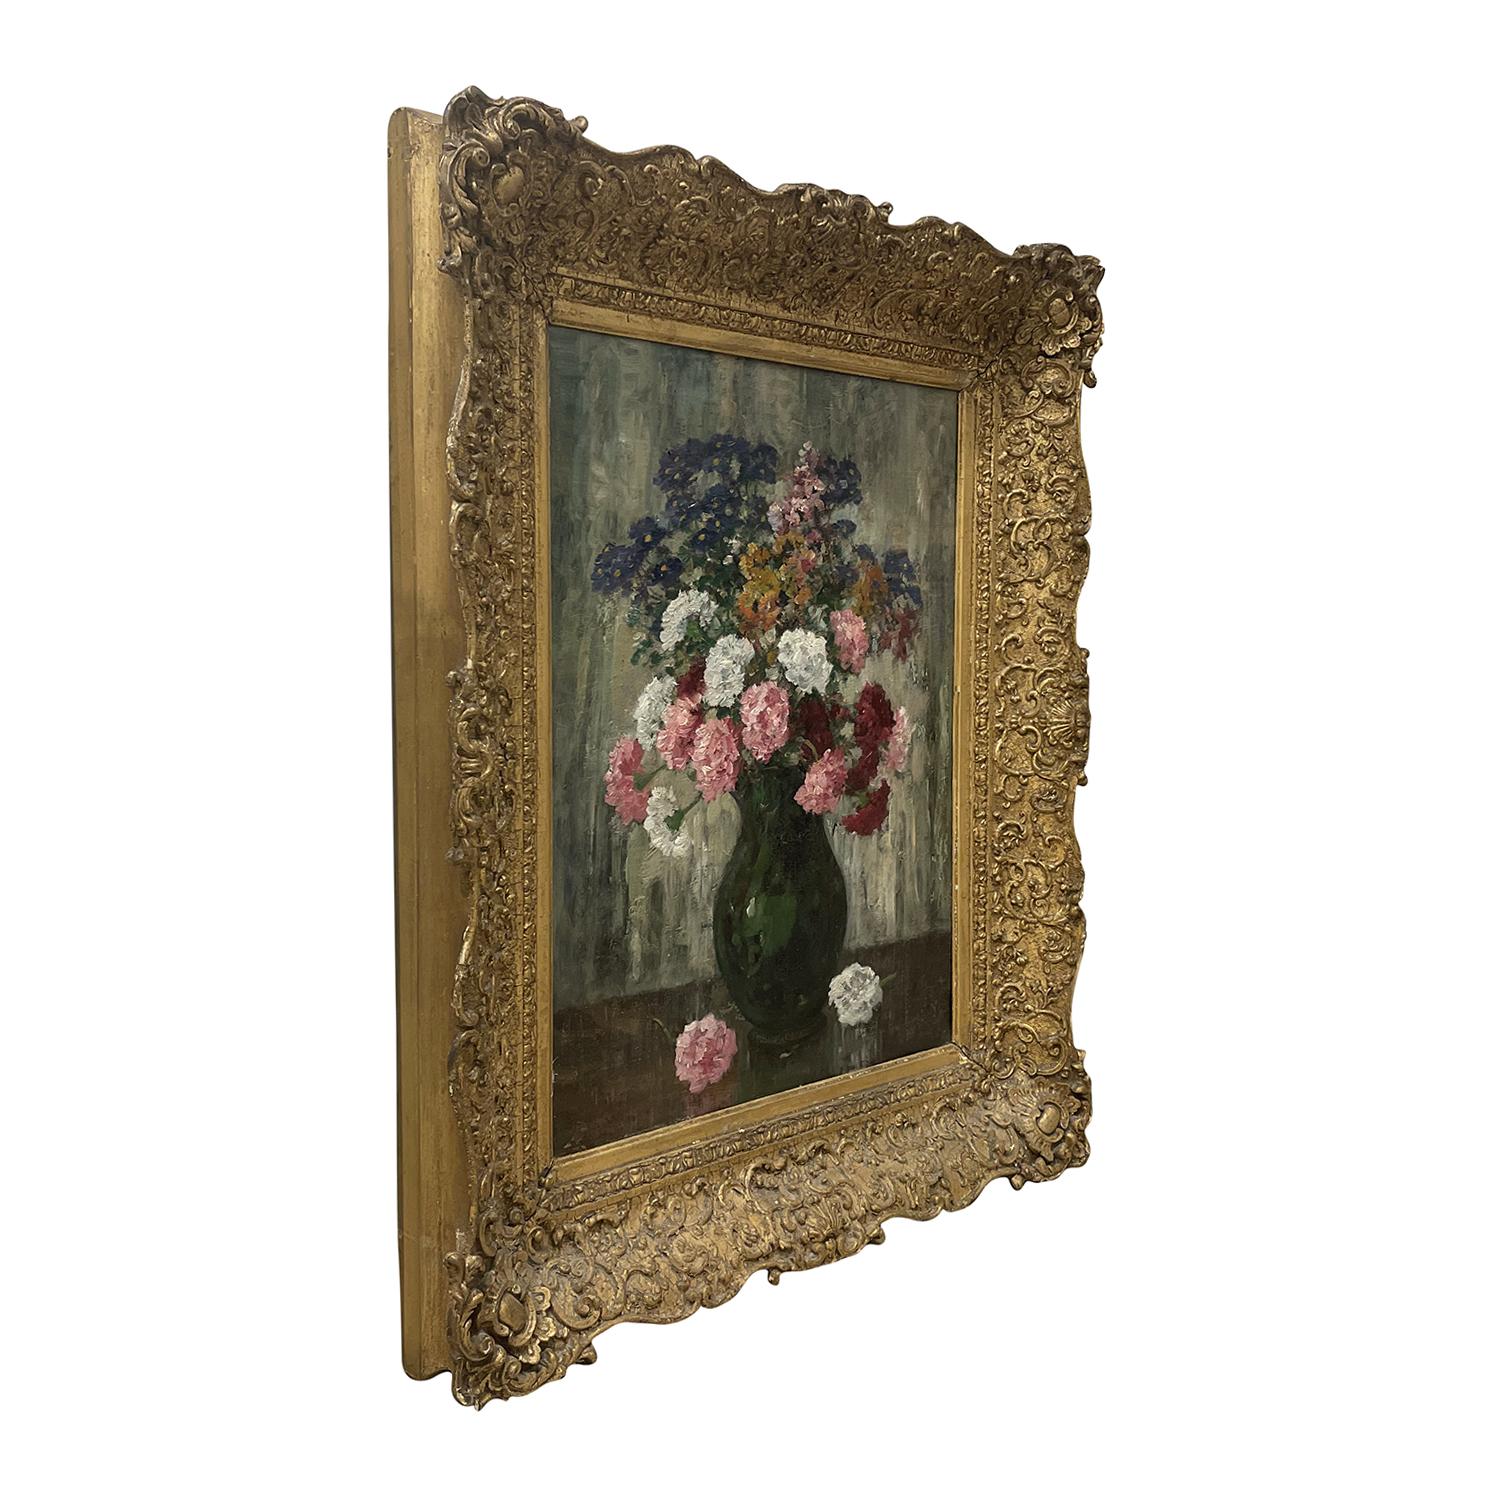 Ein hellgrünes, graues Vintage Art Deco Französisch Stillleben Öl auf Karton Gemälde, das einen Arbeitstisch mit einer grünen Vase mit Blumen darstellt, gemalt von Camille Matisse in einem handgefertigten, original vergoldeten Pinienholz Rahmen, in